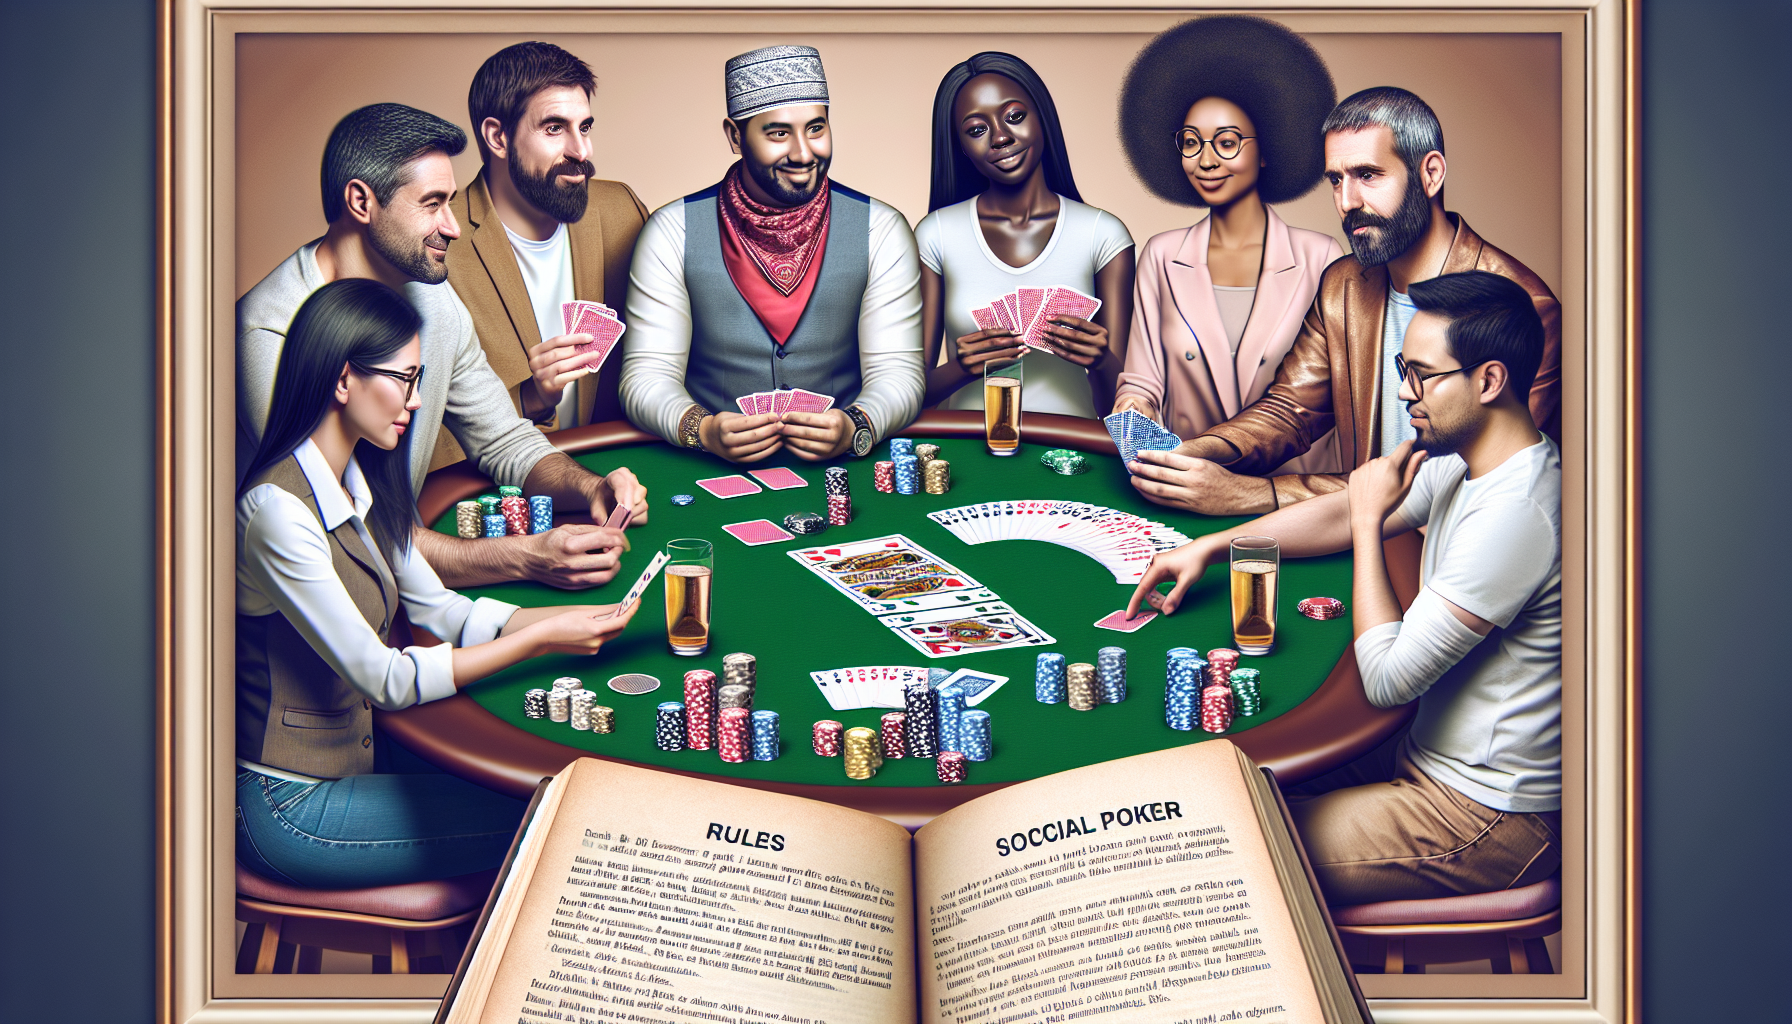 découvrez les règles du poker entre amis dans notre guide complet sur le poker en société.